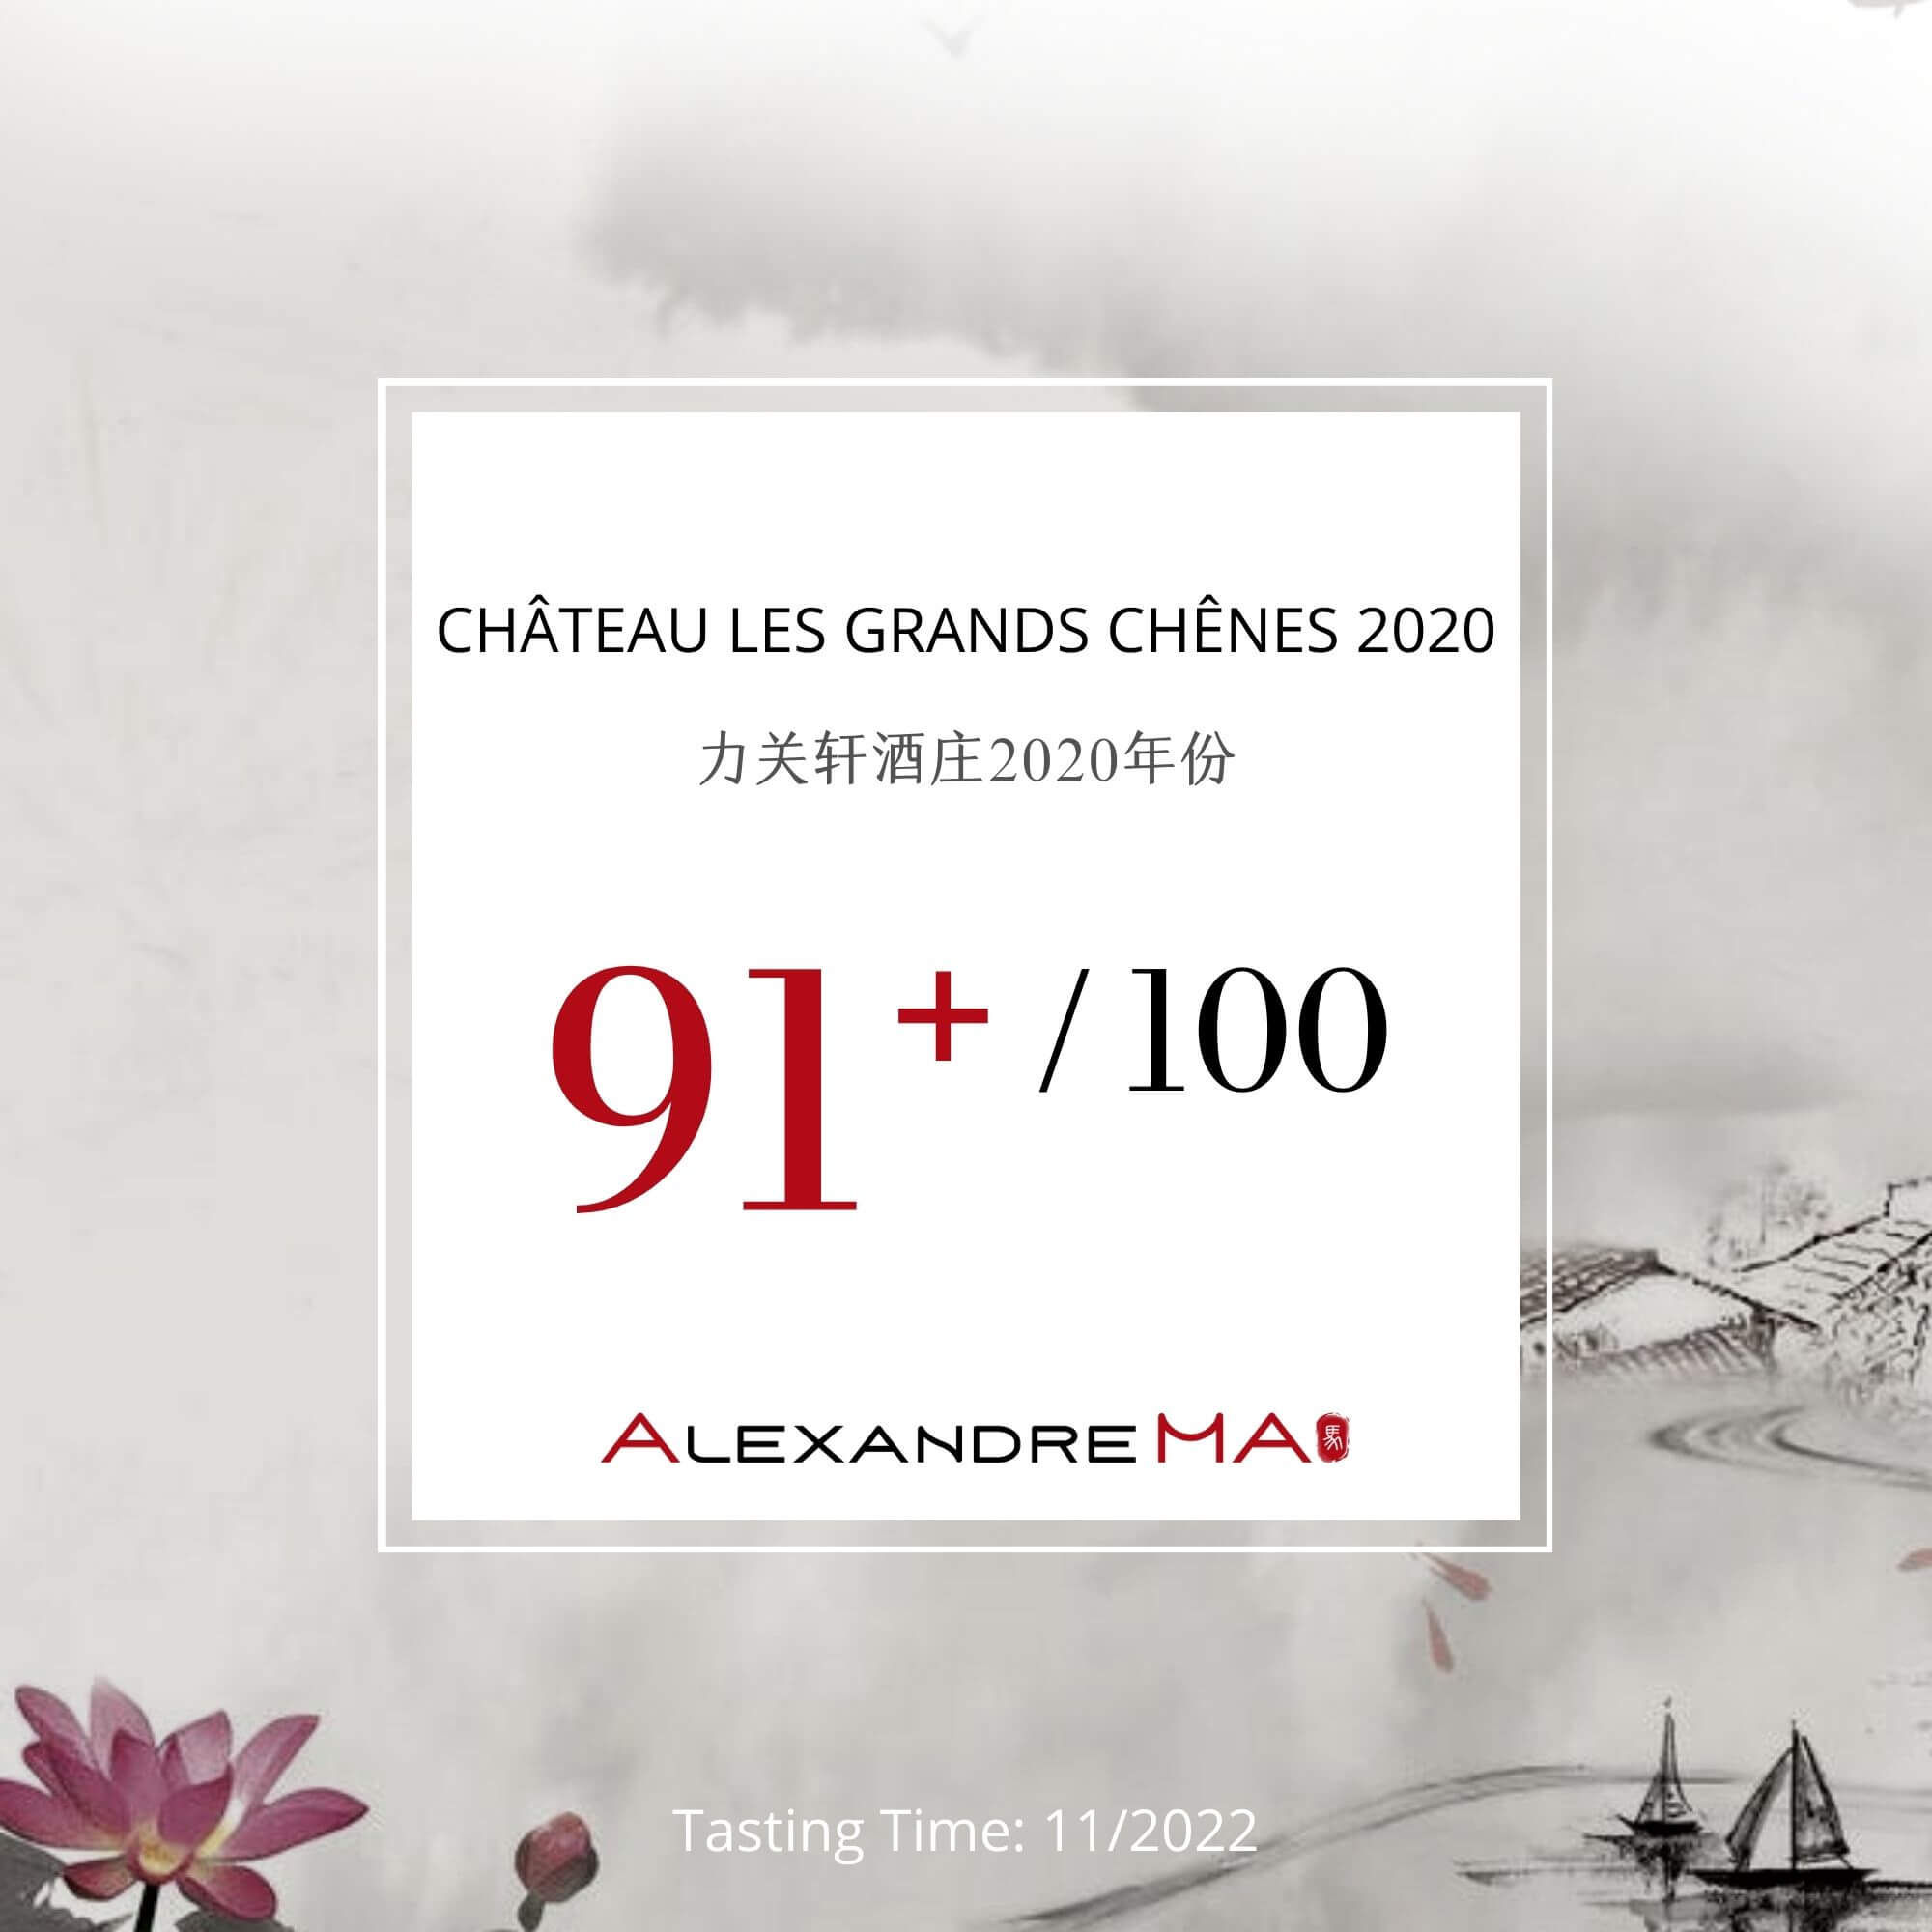 Château Les Grands Chênes 2020 - Alexandre MA